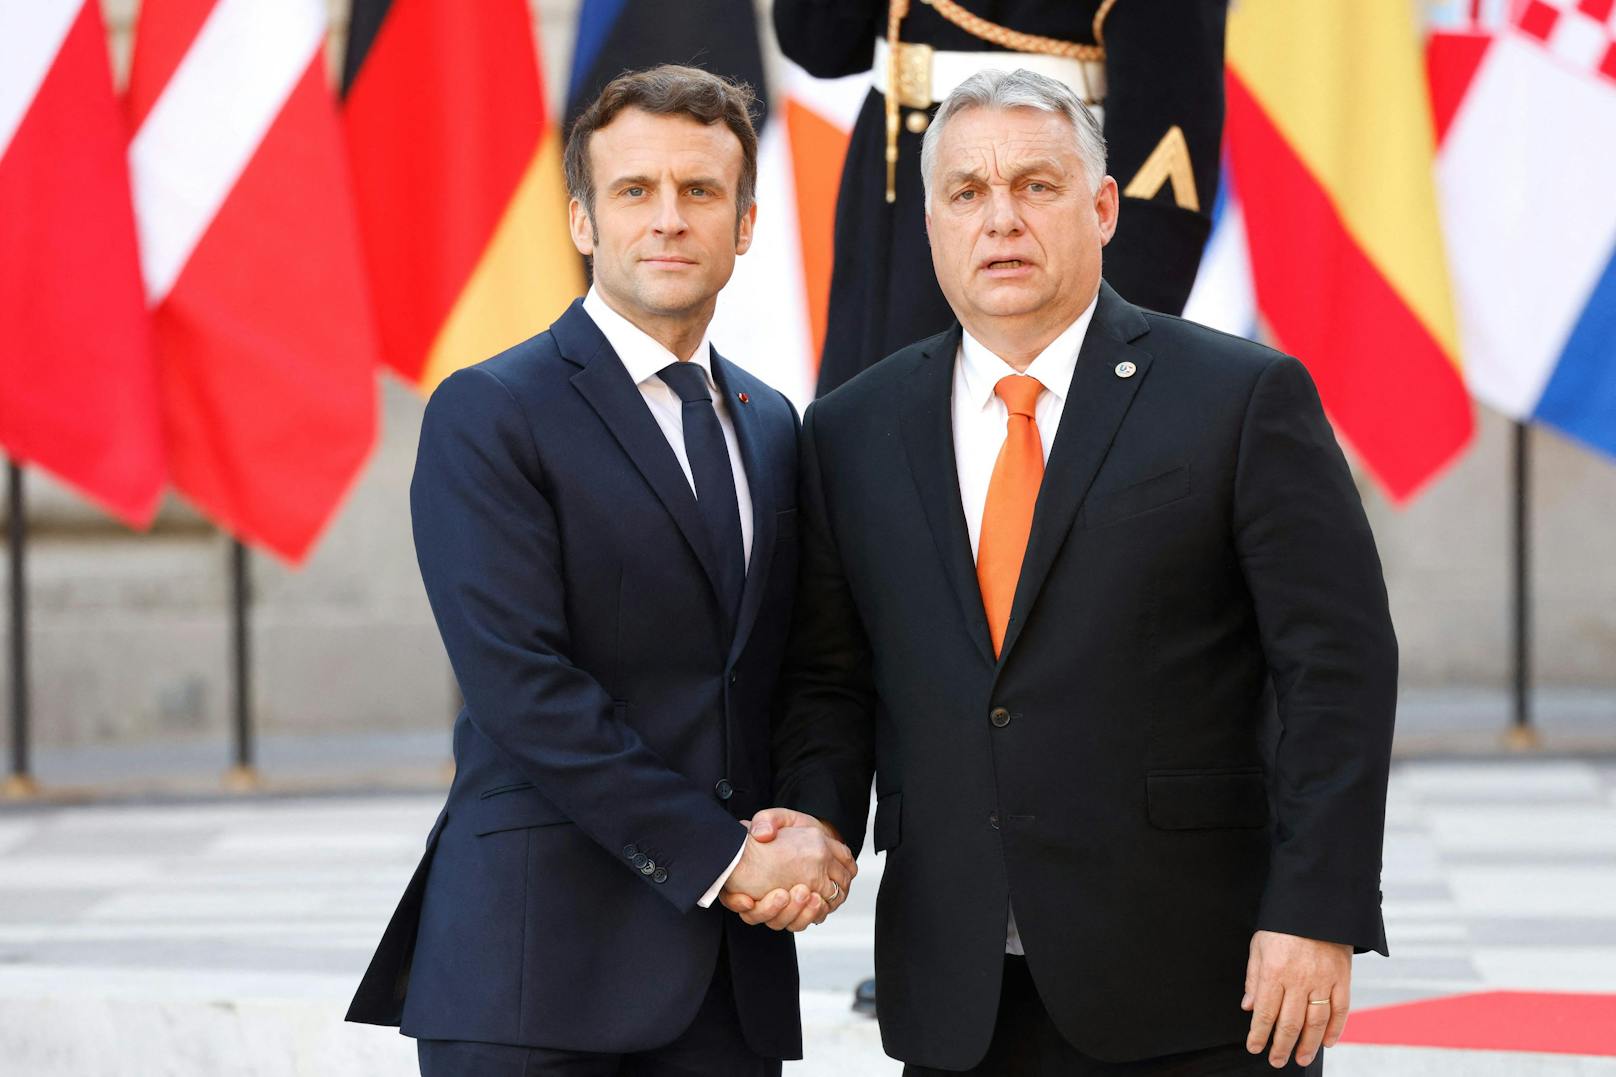 ... und Ungarns Premierminister Viktor Orban (rechts), um weitere Sanktionen gegen Russland zu besprechen.&nbsp;